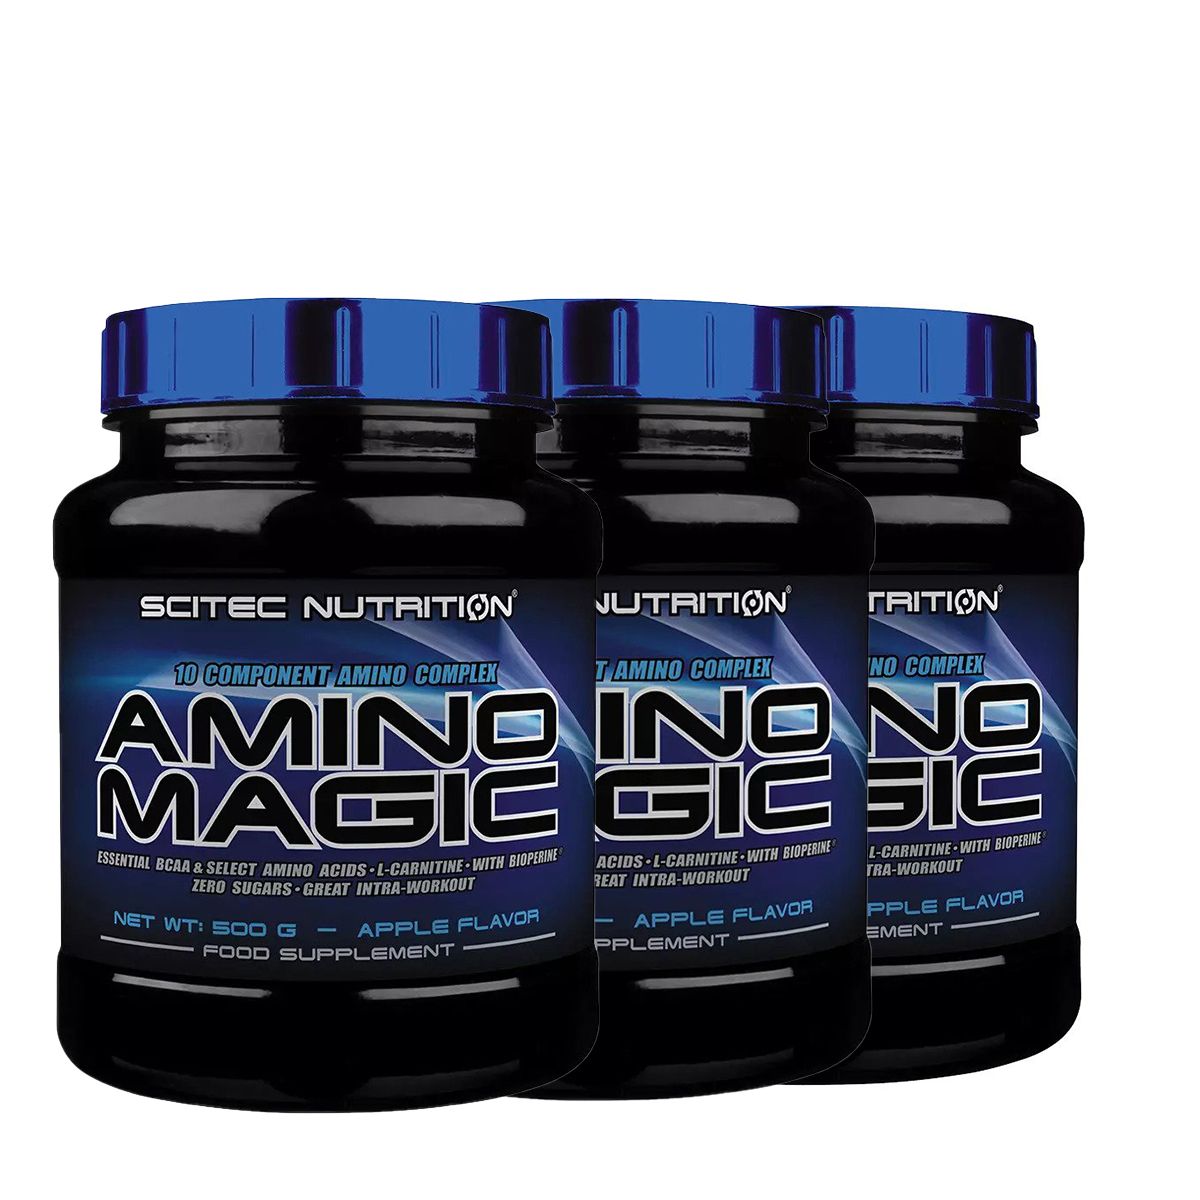 SCITEC NUTRITION - AMINO MAGIC - 10 COMPONENT AMINO COMPLEX - 3 x 500 G